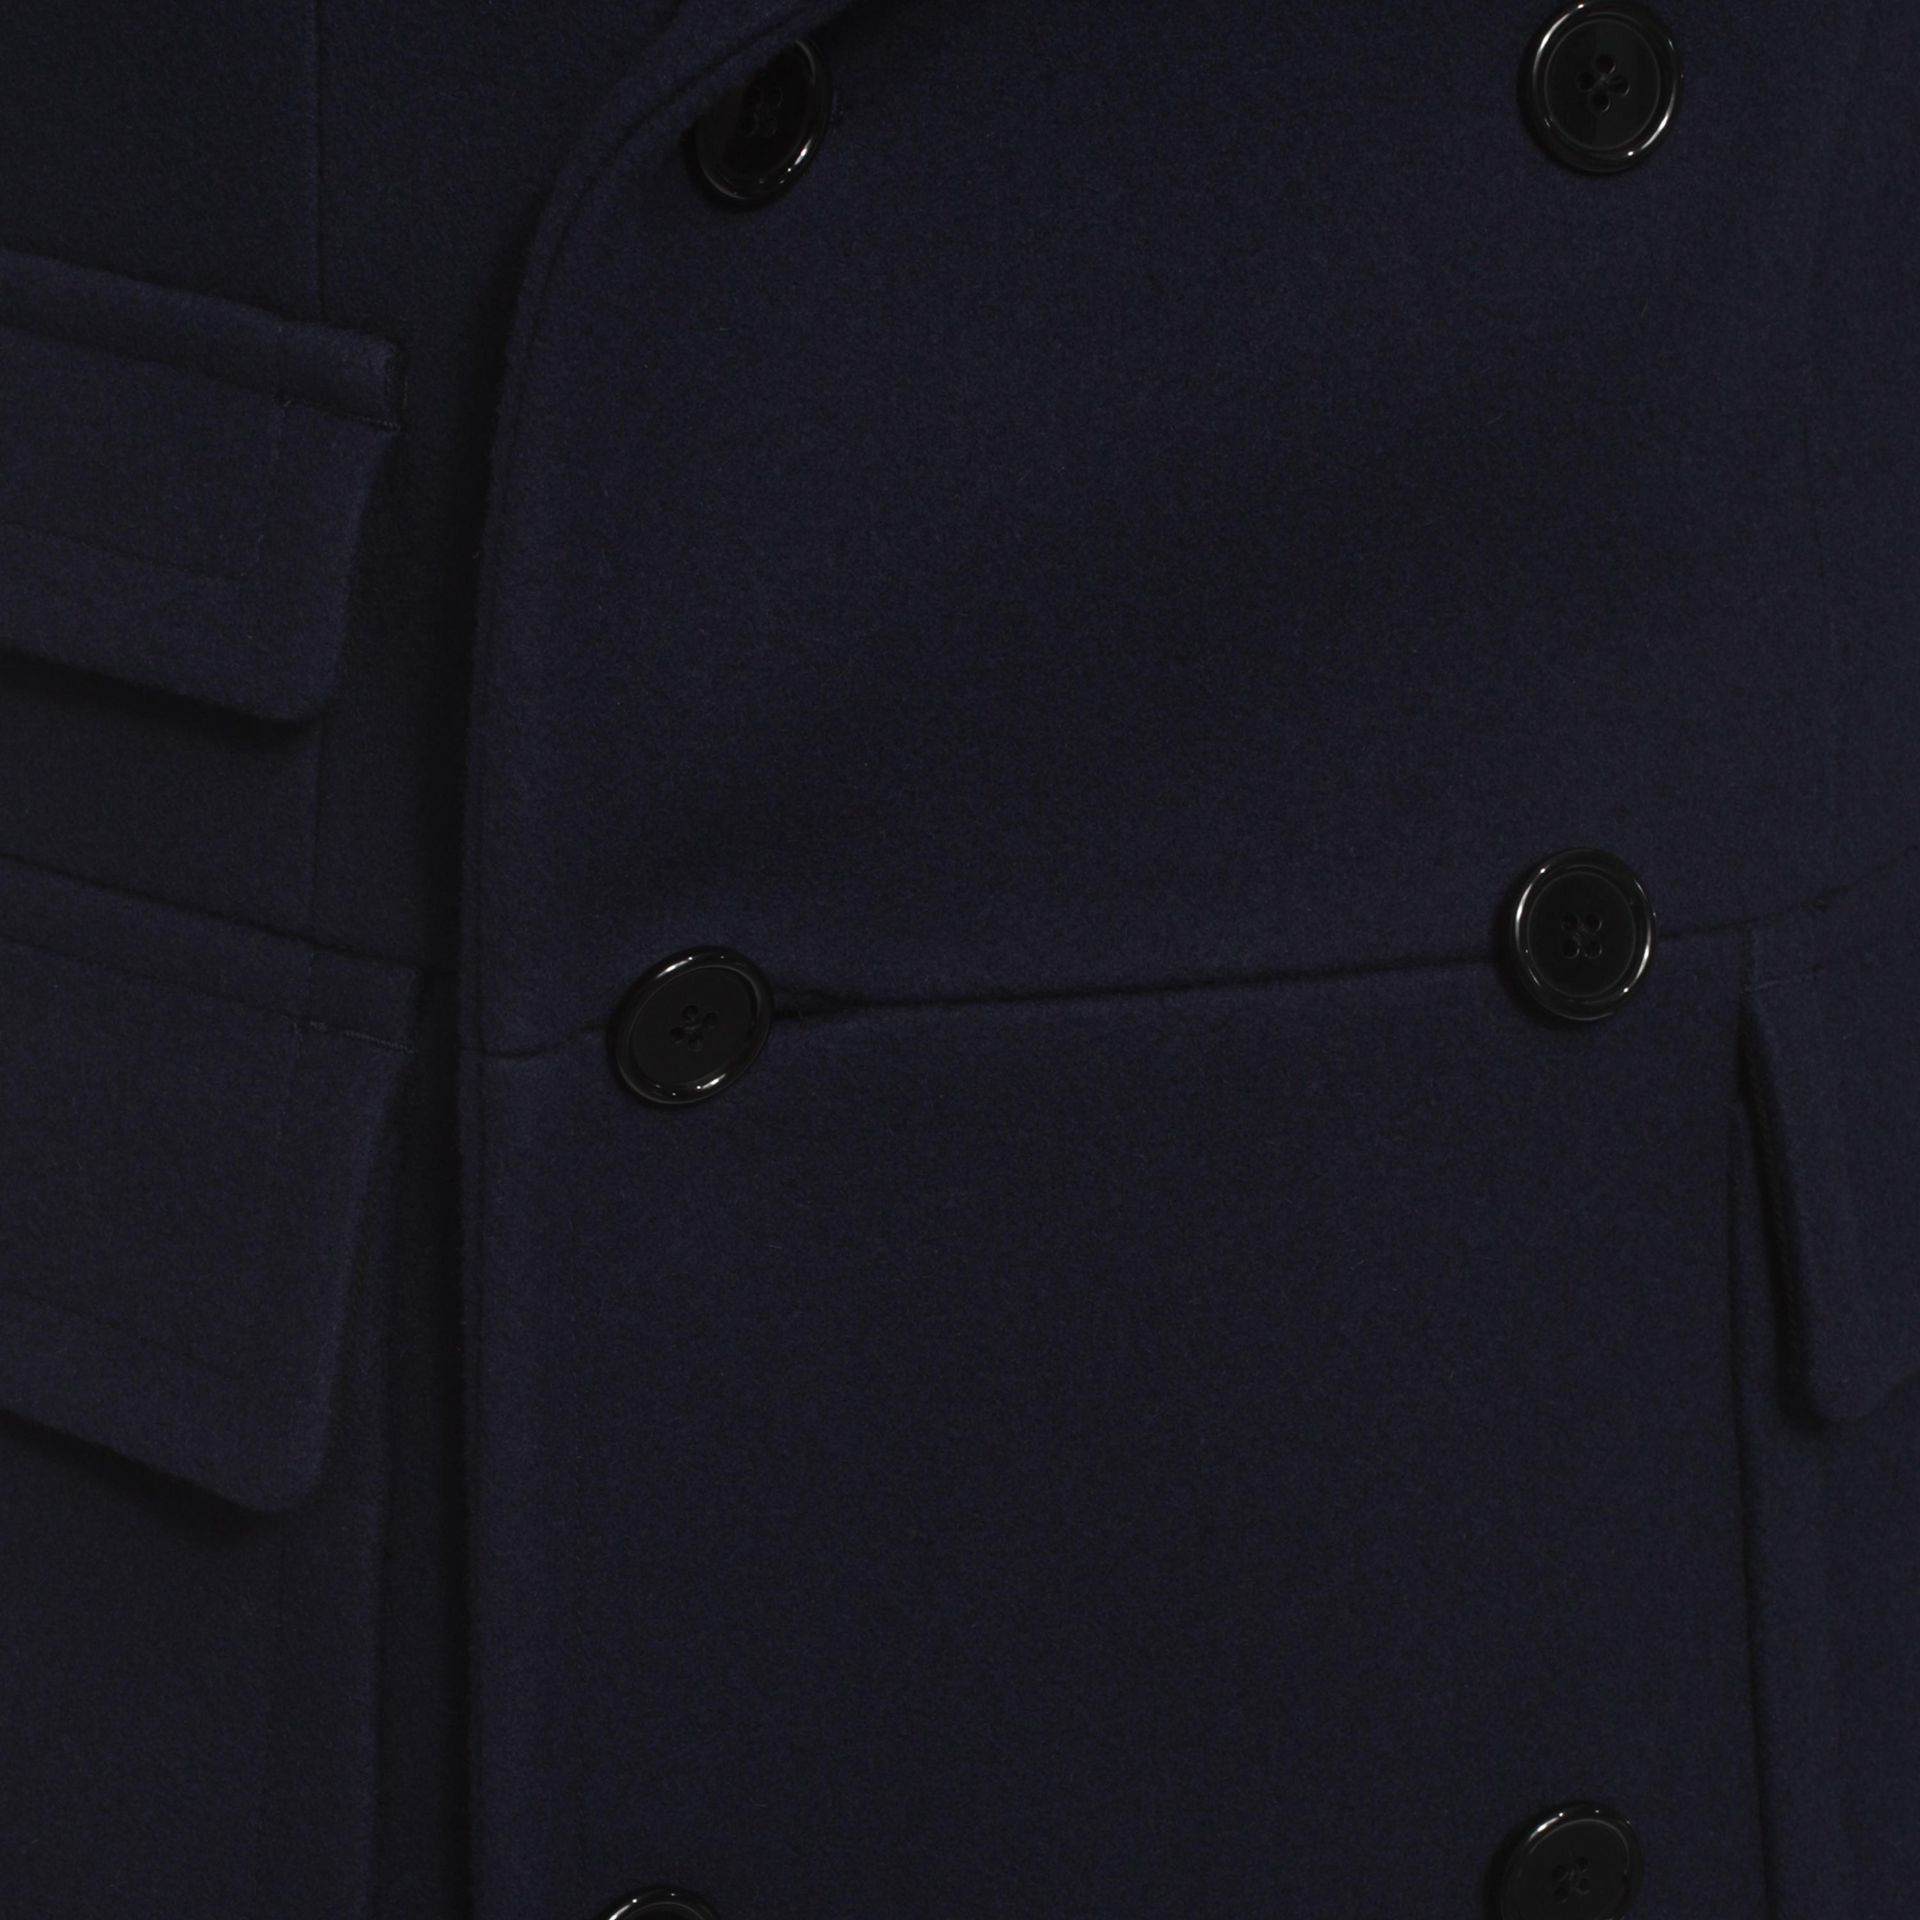 Alexander McQueen Double Breasted Frock Coat in Navy (Blue) for Men - Lyst